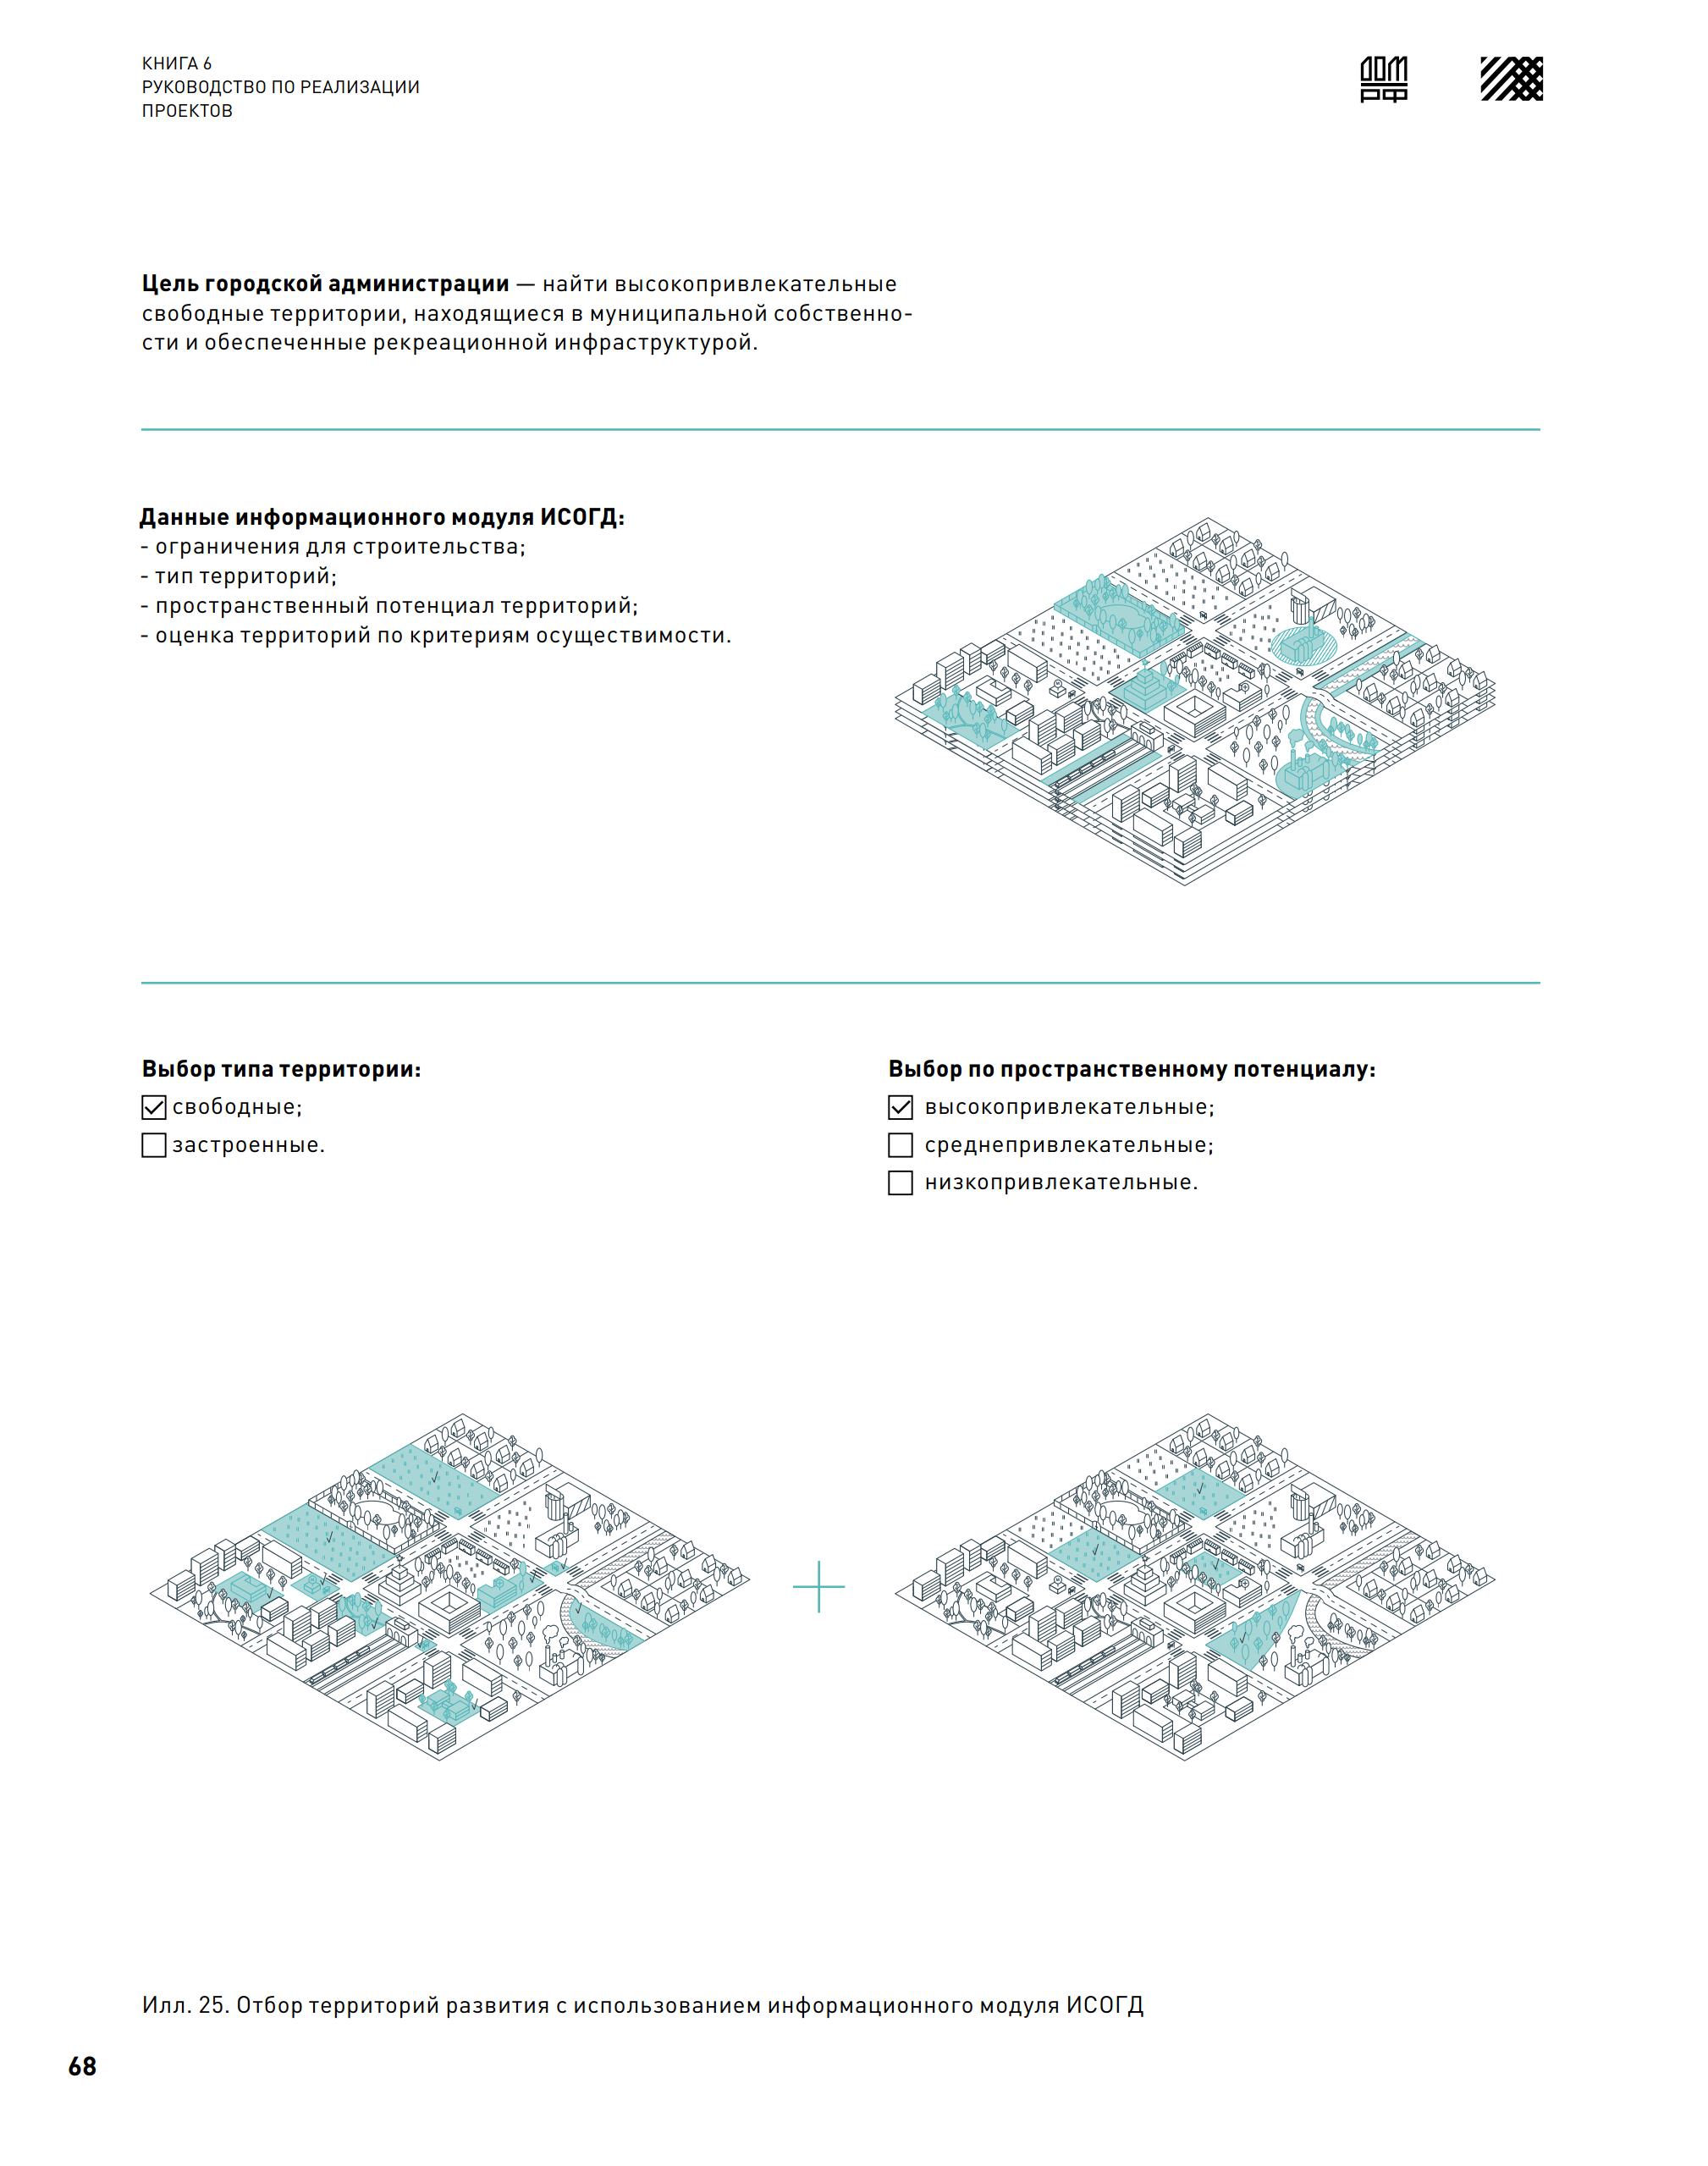 Стандарт комплексного развития территорий : Книга 6. Руководство по реализации проектов. — 2020